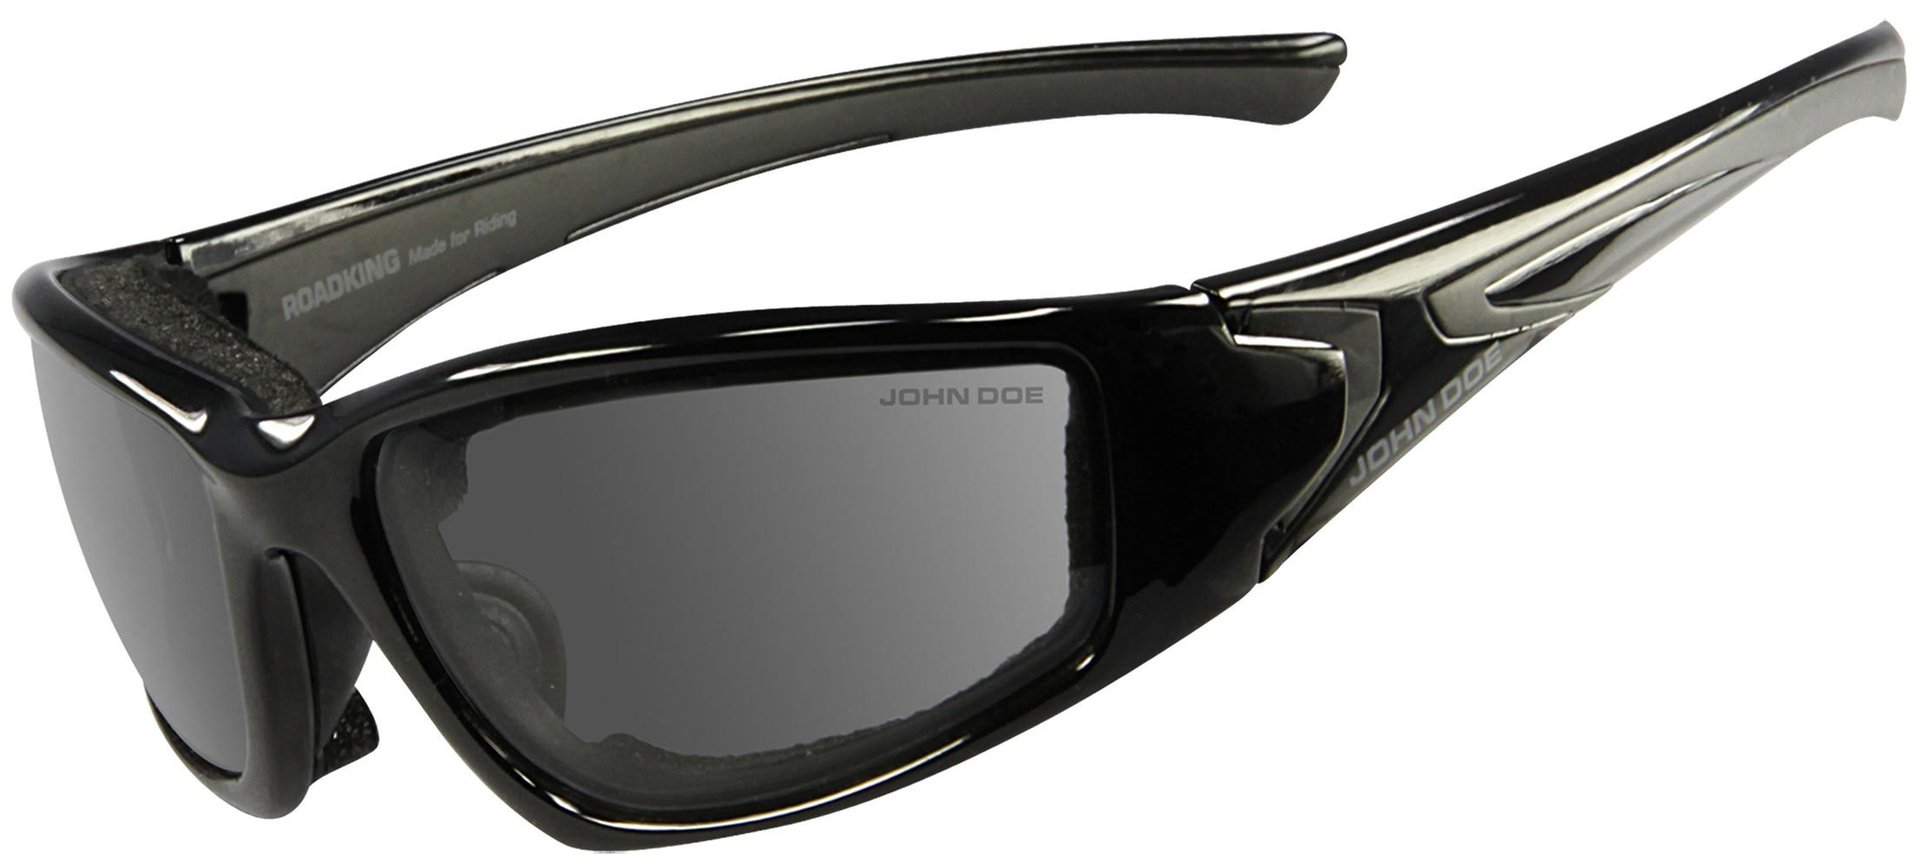 John Doe Roadking Photocromatic lunettes de soleil Noir unique taille